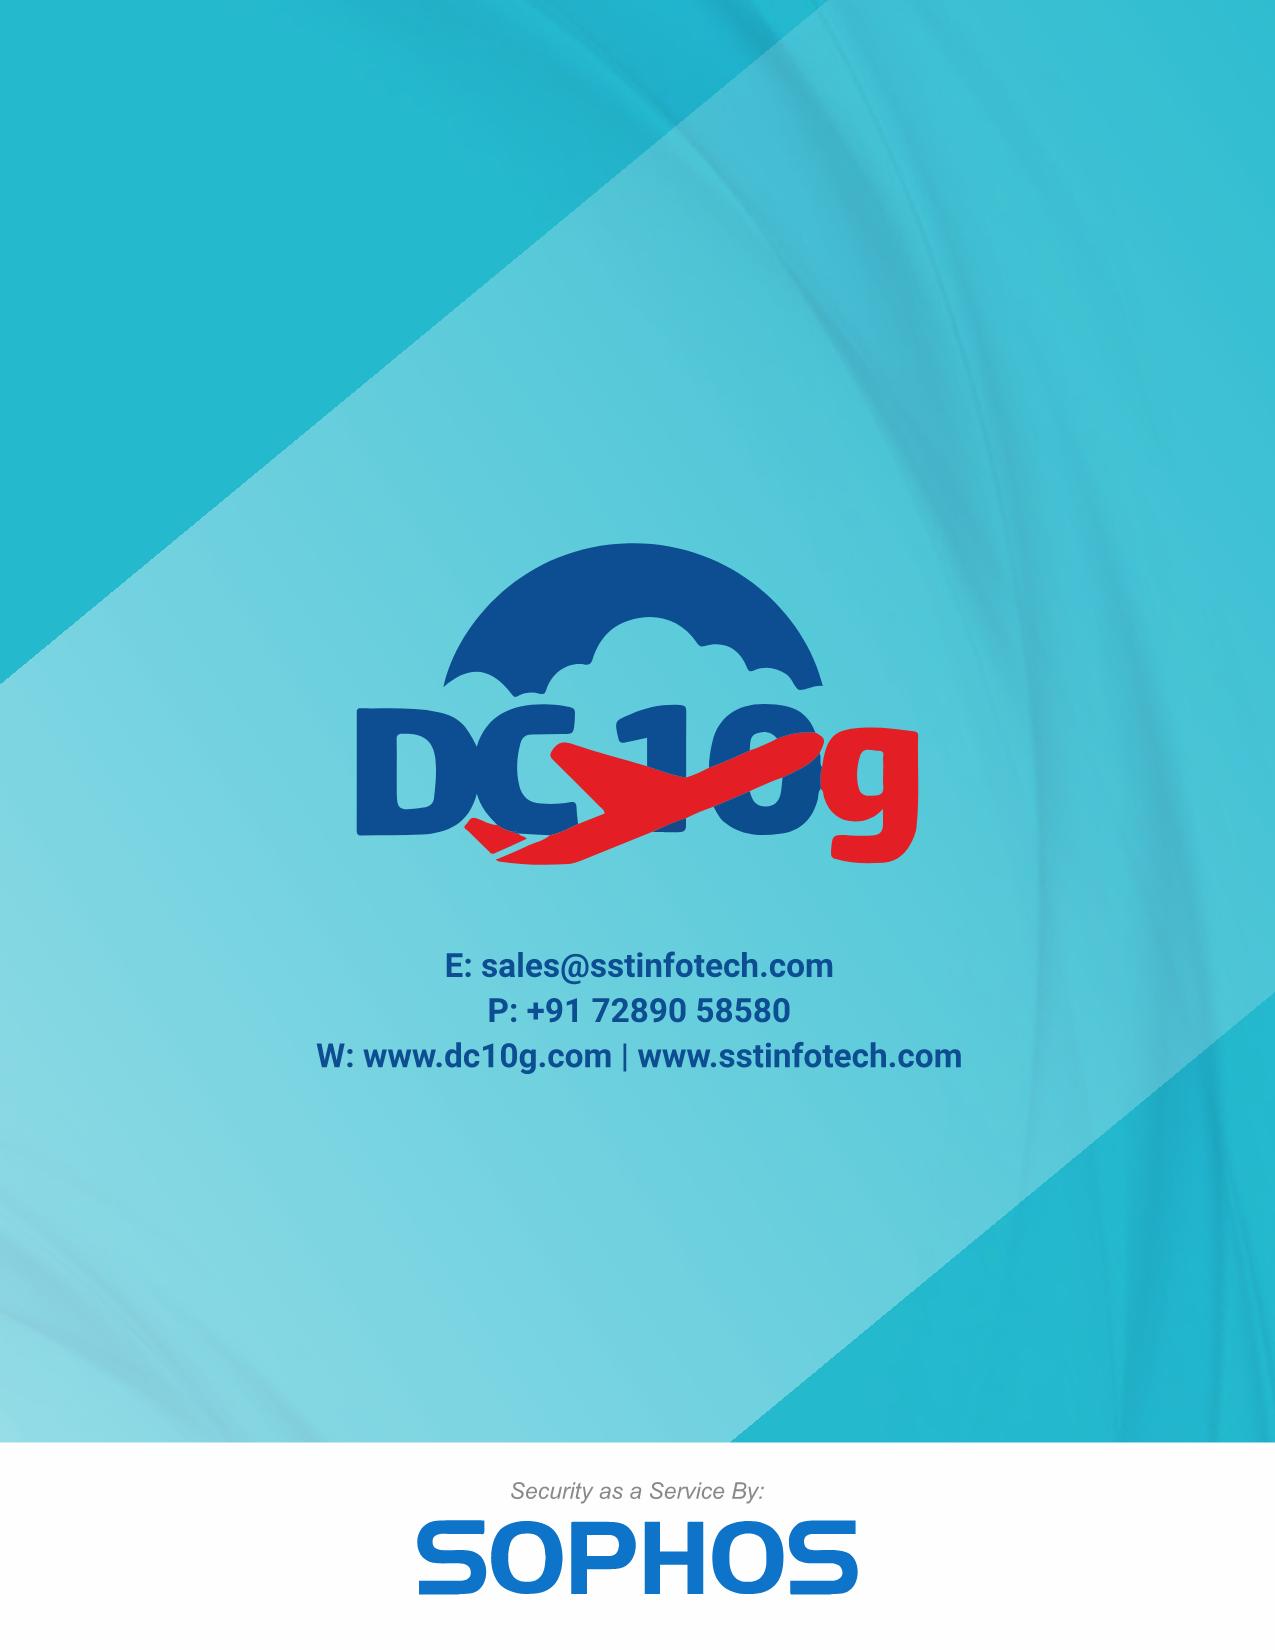 dc10g logo image